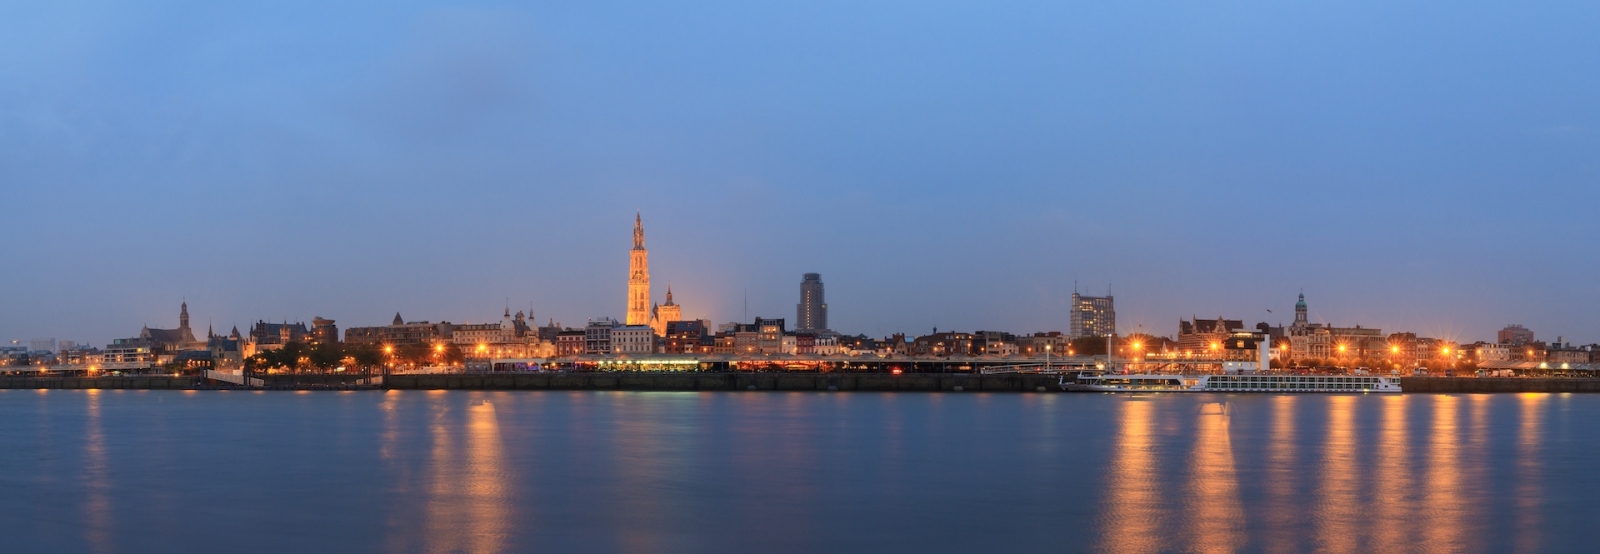 Красивая панорама городского пейзажа горизонта Антверпена, Бельгия, в синий час, видимая с берега реки Шельда